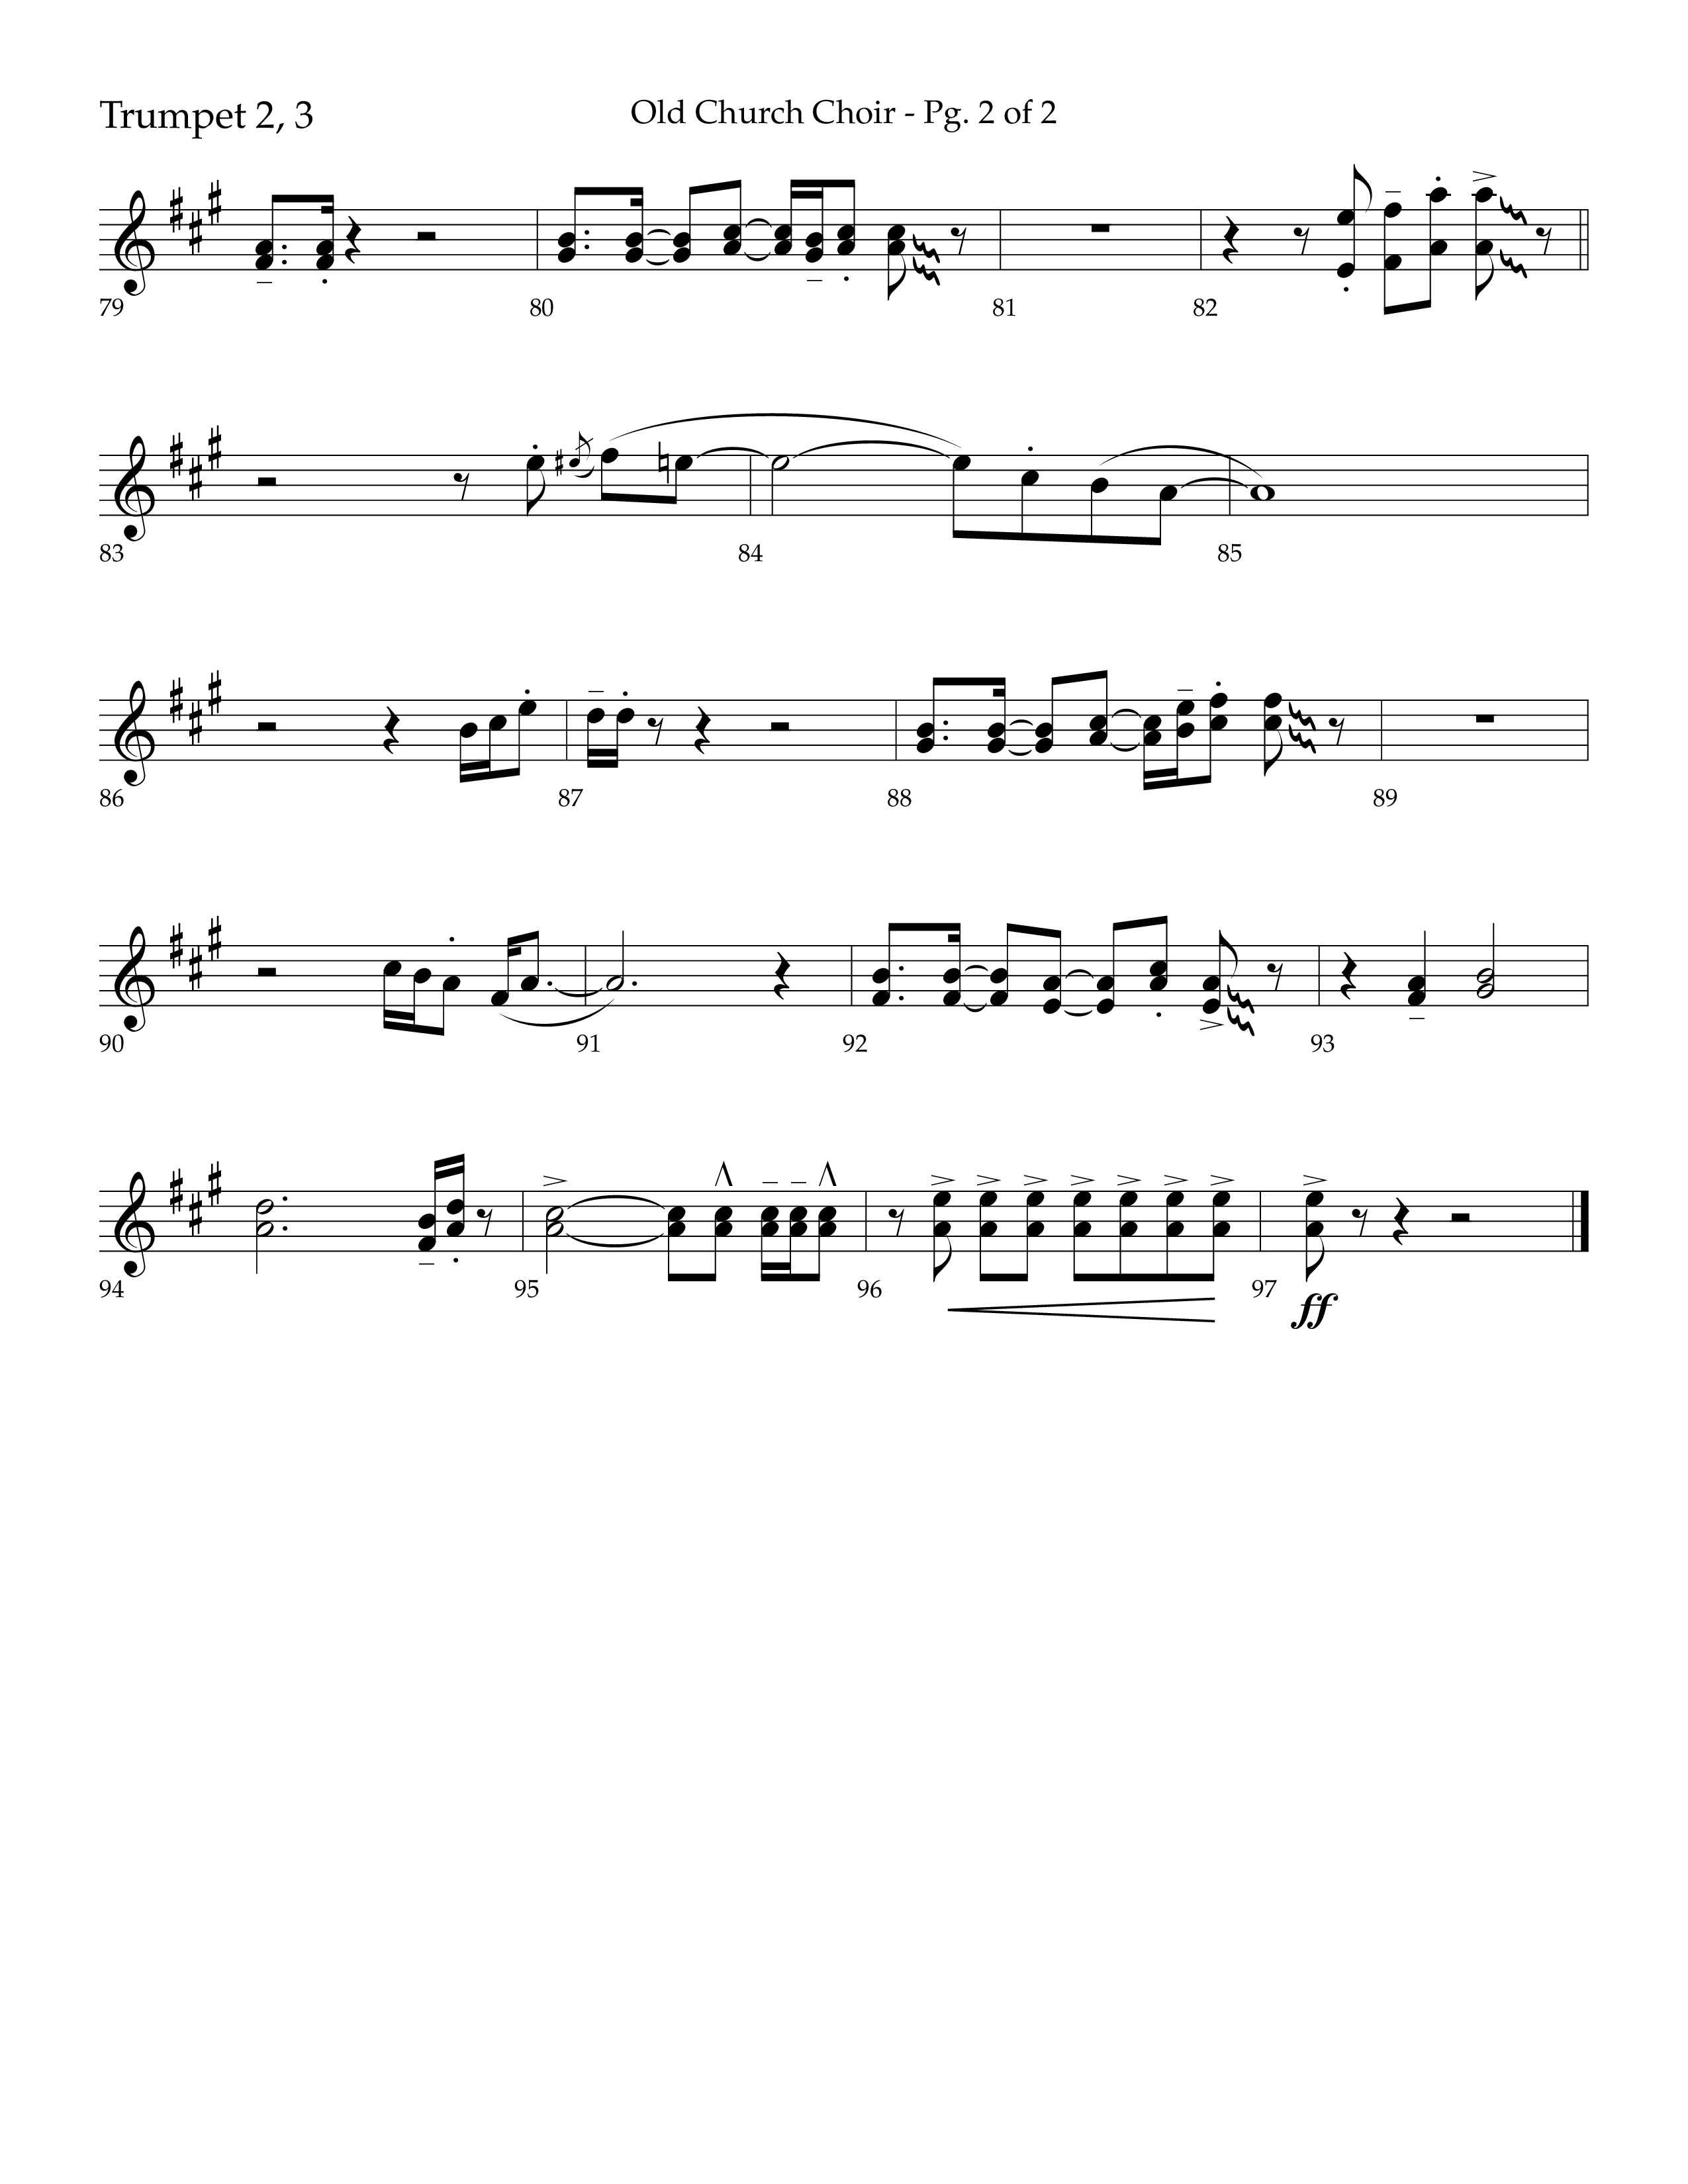 Old Church Choir (Choral Anthem SATB) Trumpet 2/3 (Lifeway Choral / Arr. Ken Barker / Arr. Craig Adams / Arr. Danny Zaloudik)